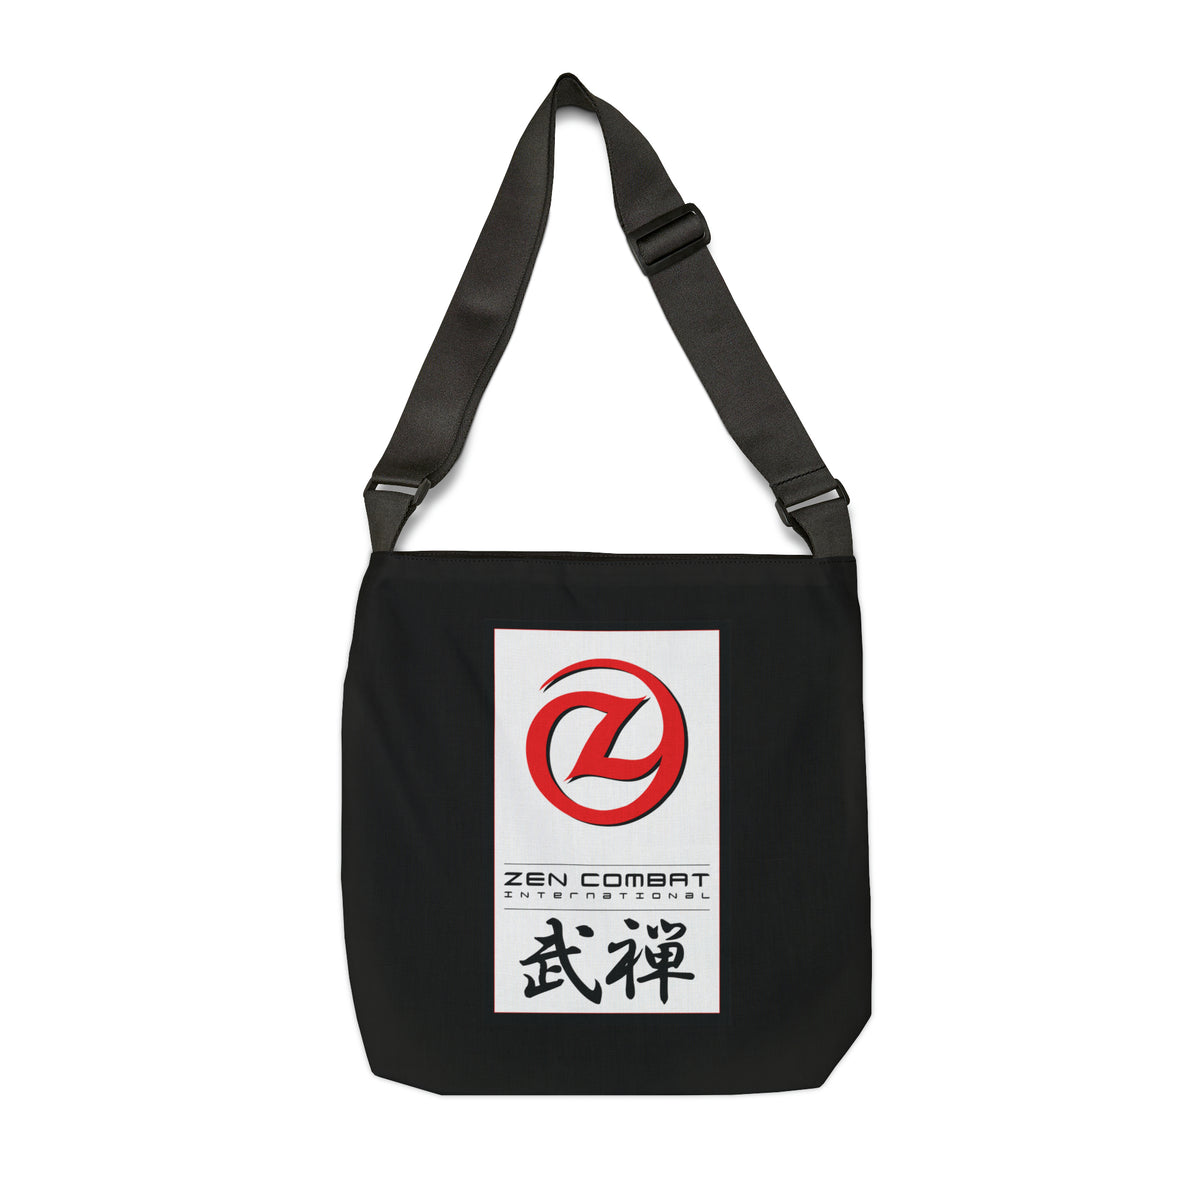 Zen Combat Adjustable Tote Bag - Black